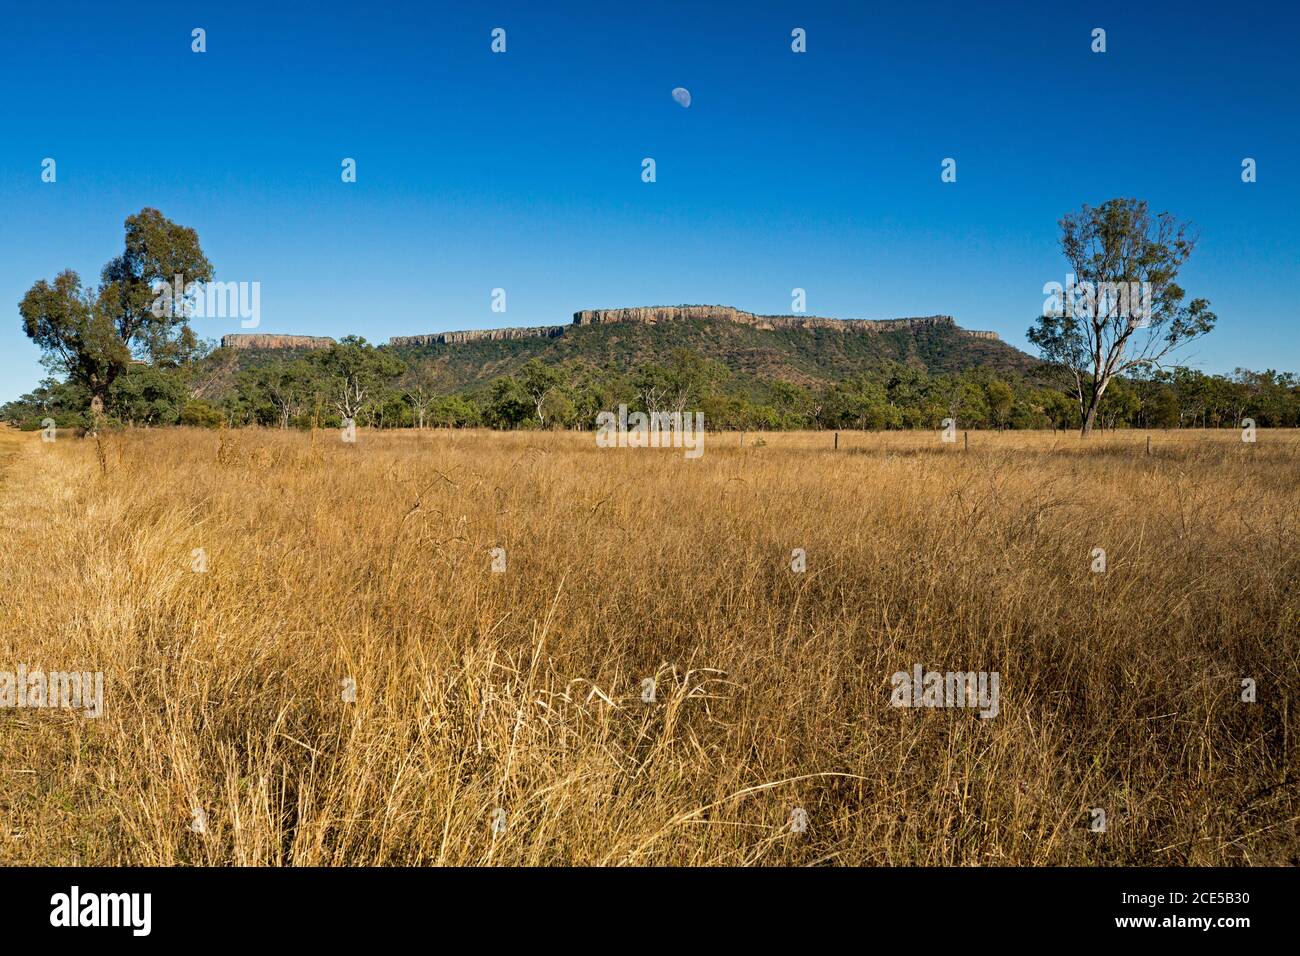 El Parque Nacional Hills of Peak Range se eleva hacia el cielo azul Con el primer plano envuelto en pastos de oro en el Outback de Queensland Australia Foto de stock